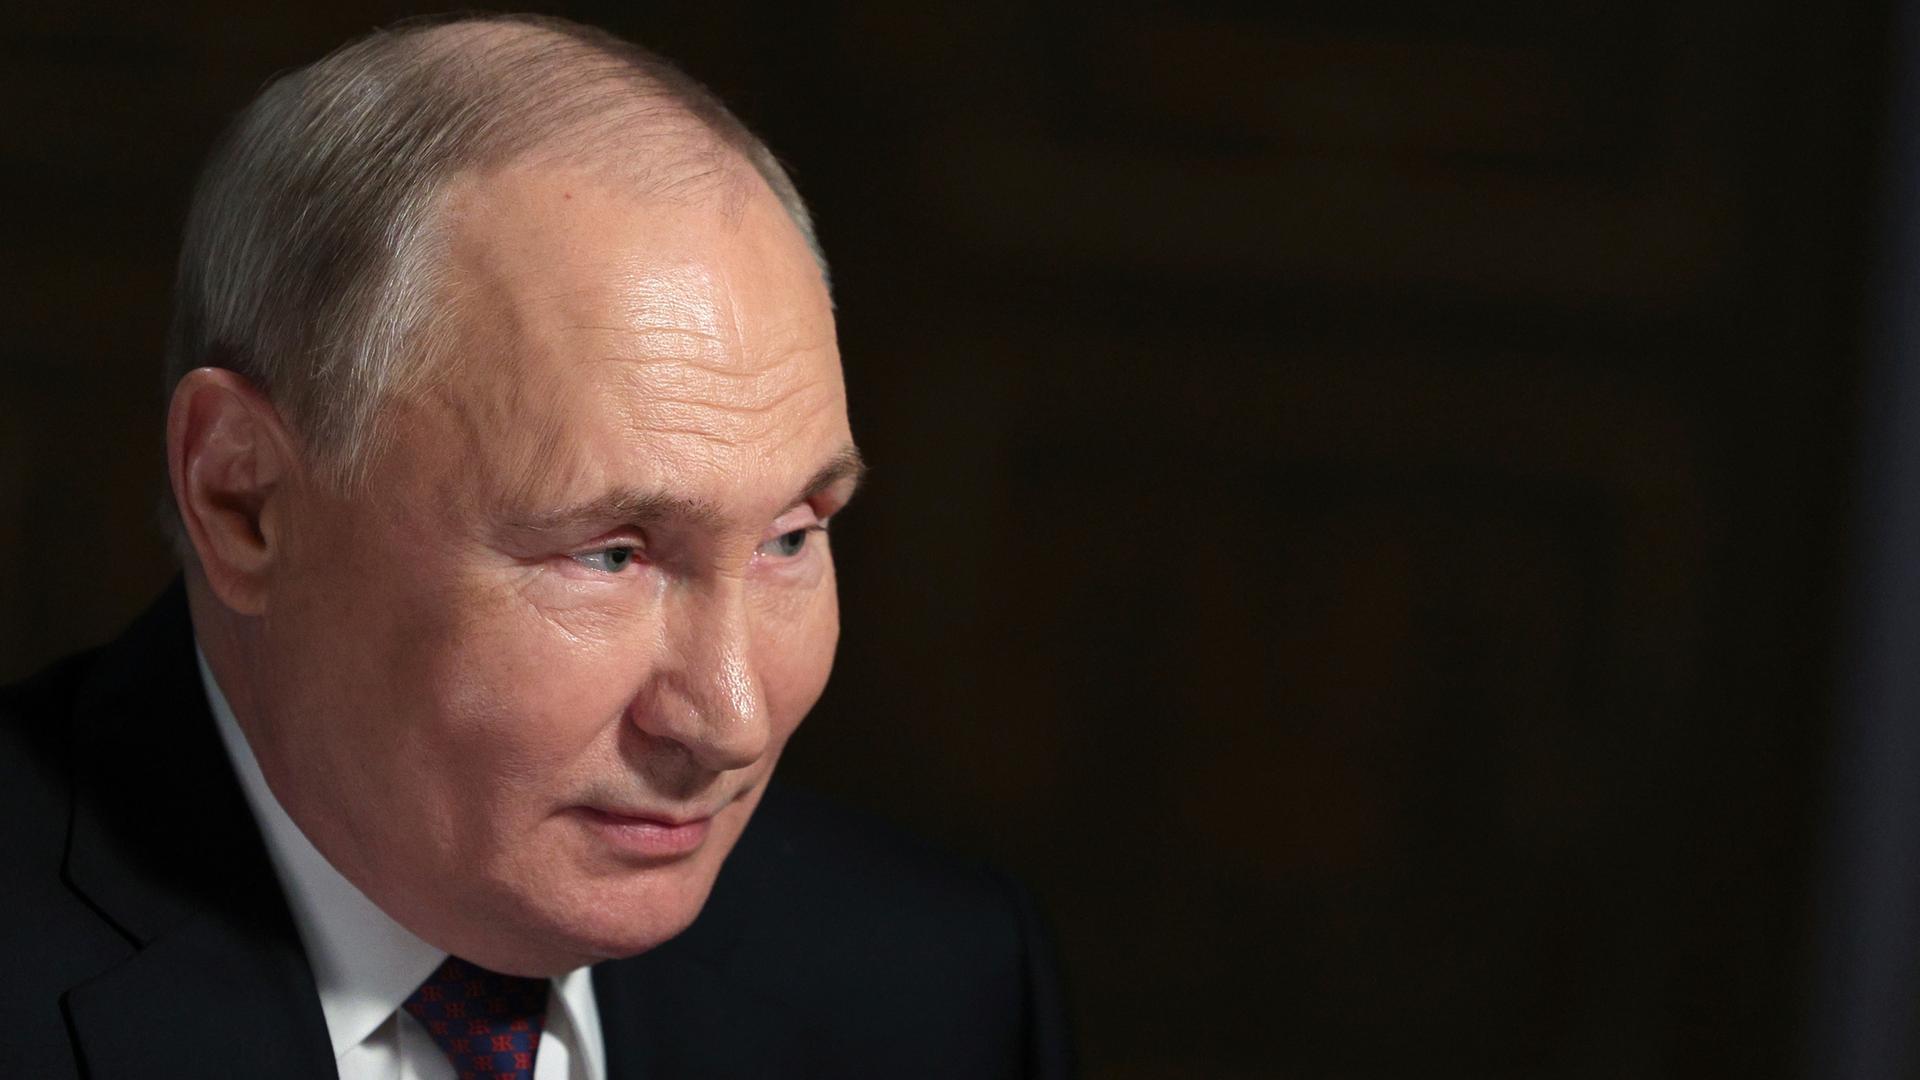 Russlands Präsident Putin im Porträt vor schwarzem Hintergrund.